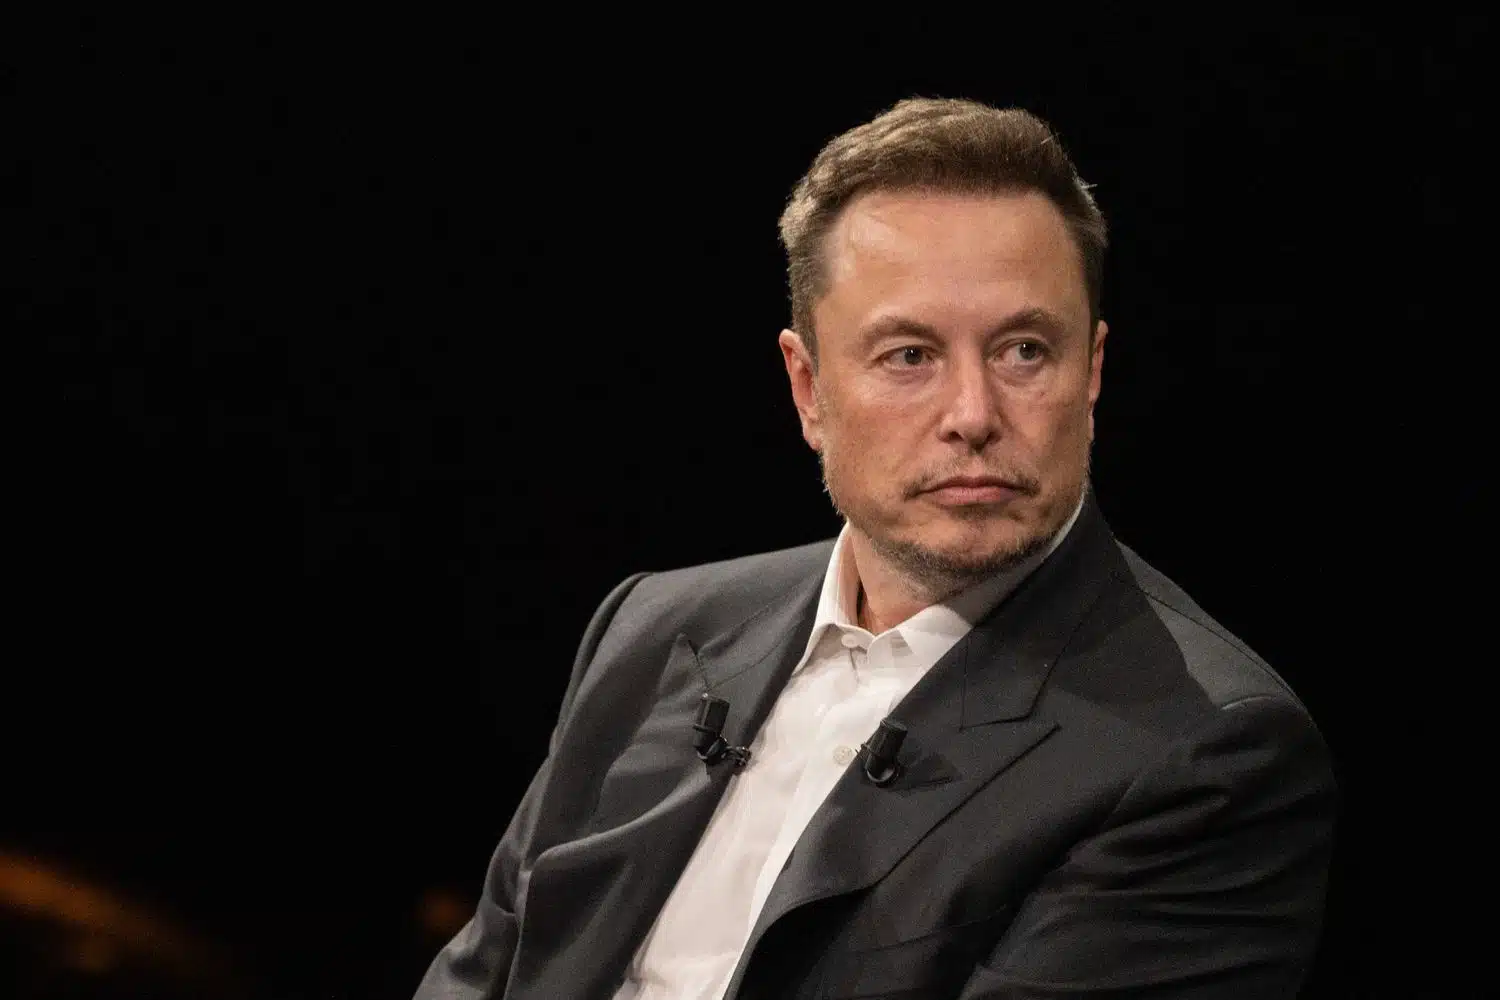 Acusan a Elon Musk de acosar a empleadas de SpaceX